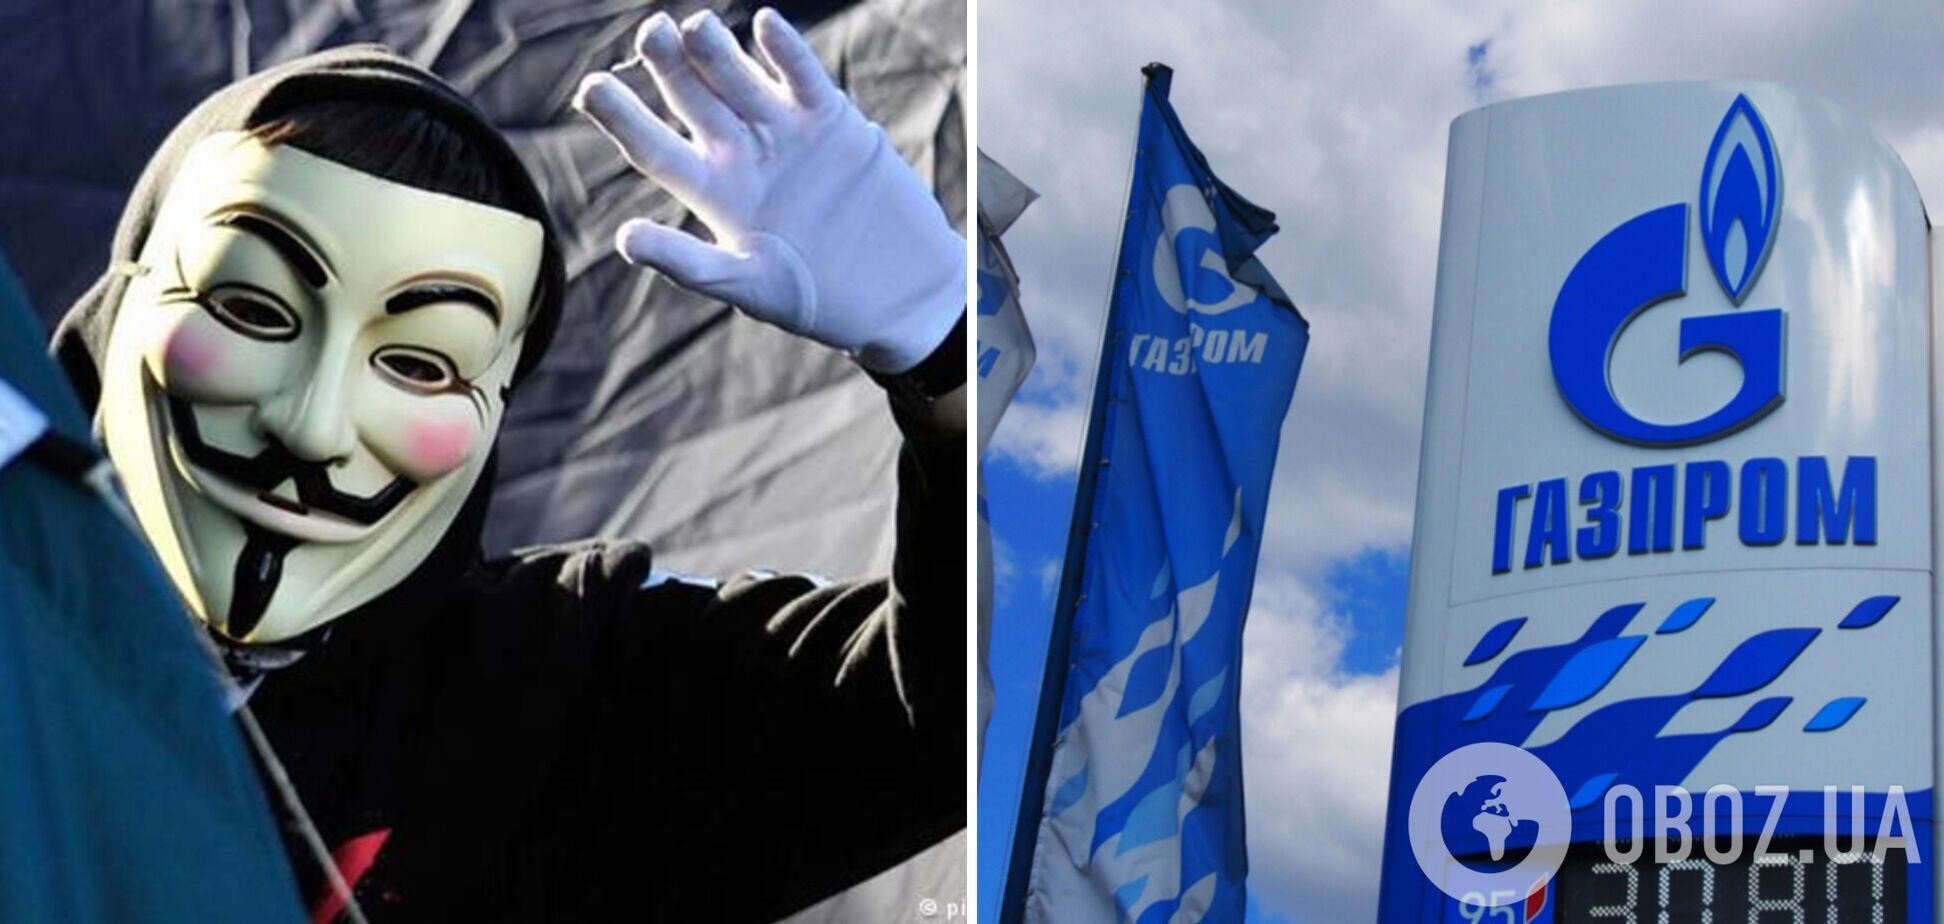 Хакеры Anonymous взломали одну из компаний 'Газпрома' и слили в сеть 768 тыс. писем сотрудников